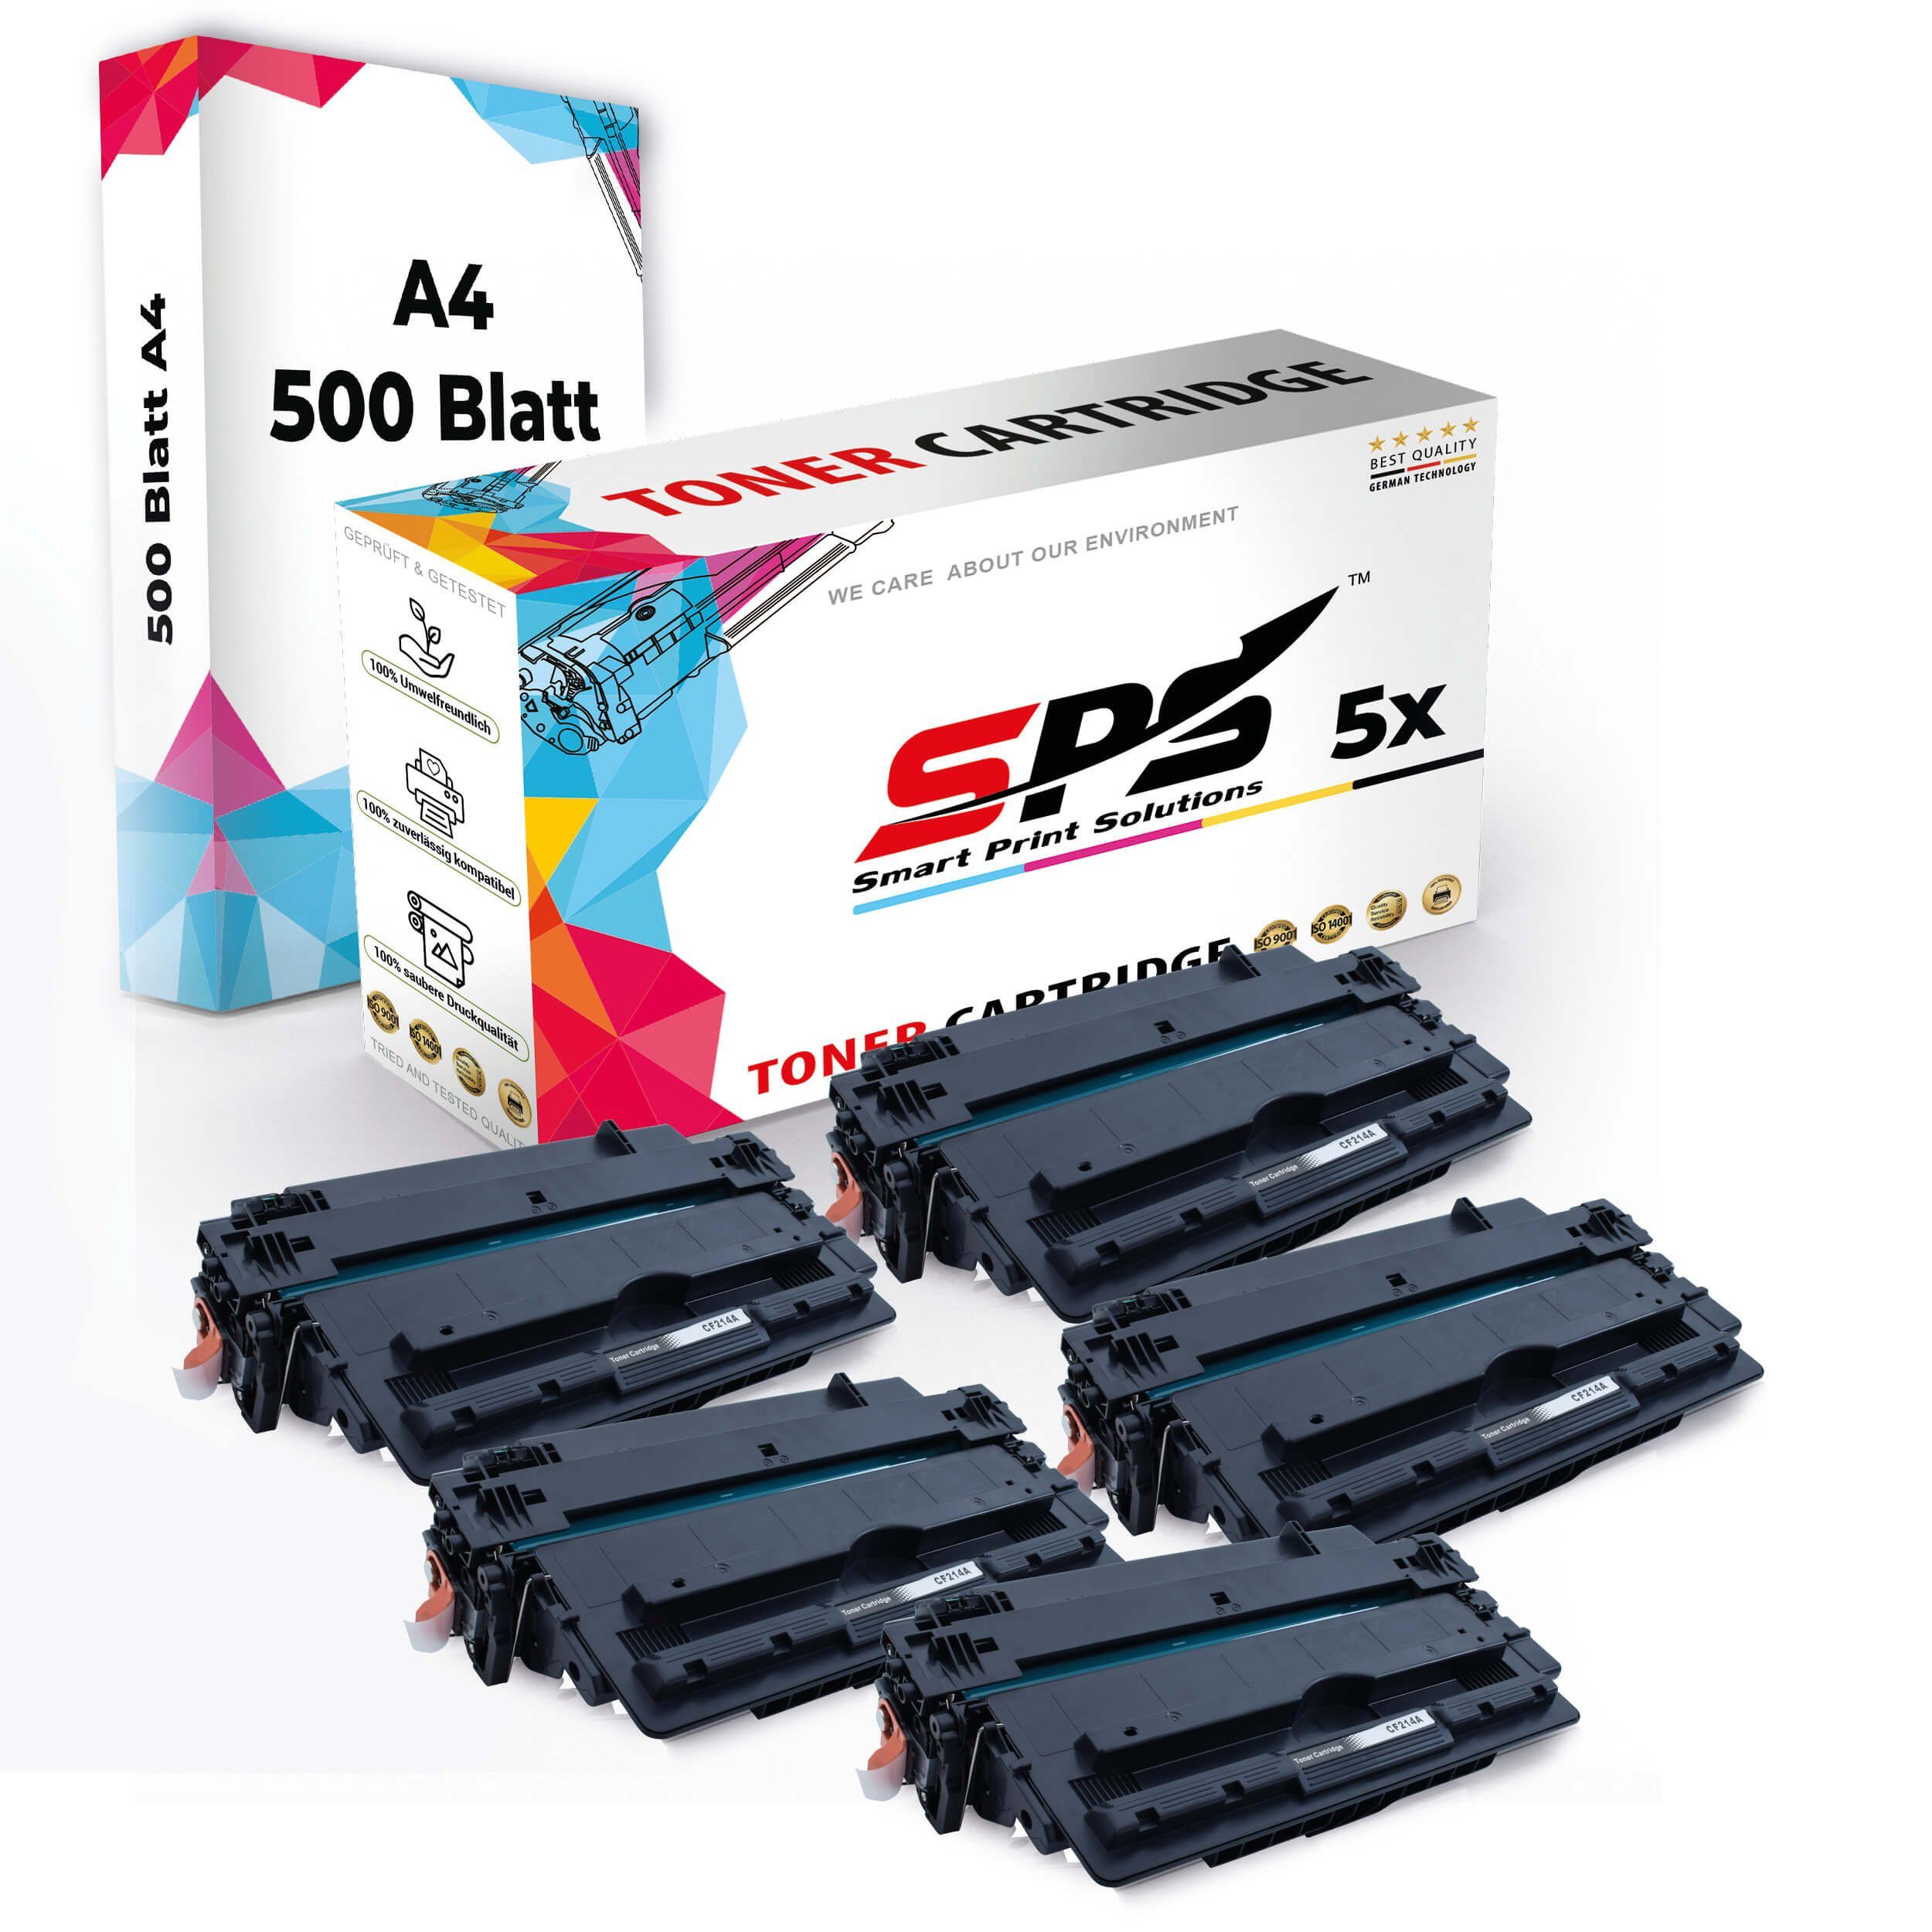 SPS Tonerkartusche Druckerpapier 5x Kompatibel, Multipack A4 A4 Pack, Druckerpapier) (5er Set Toner,1x + 5x